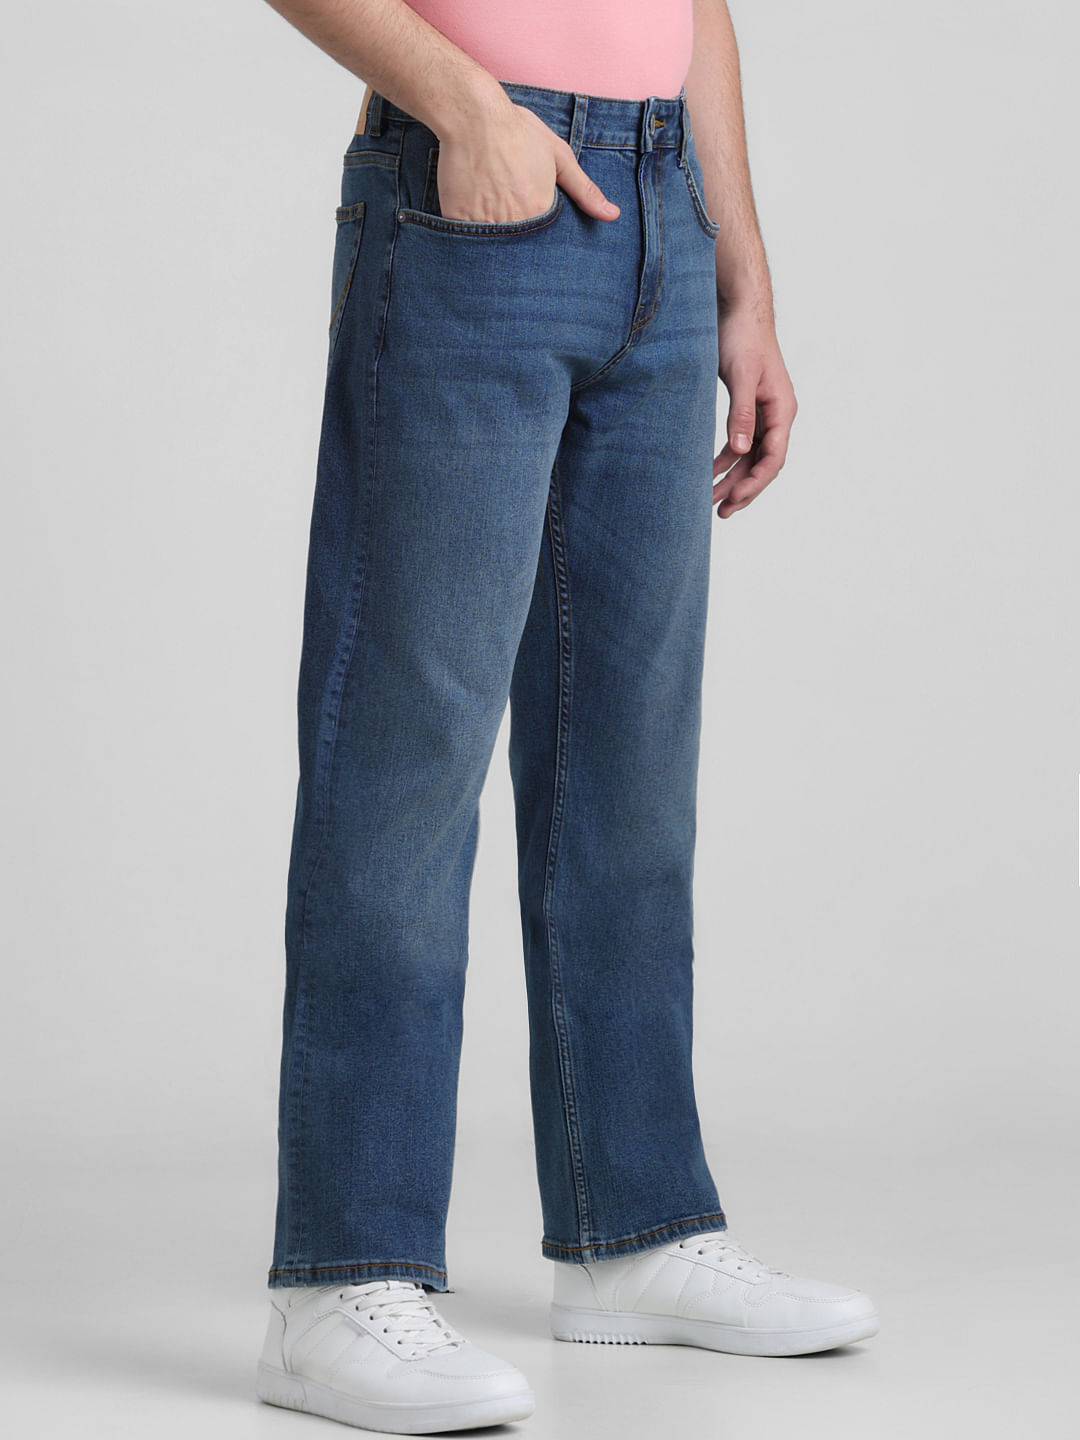 Rigid Wrangler® Cowboy Cut® Original Fit Jean